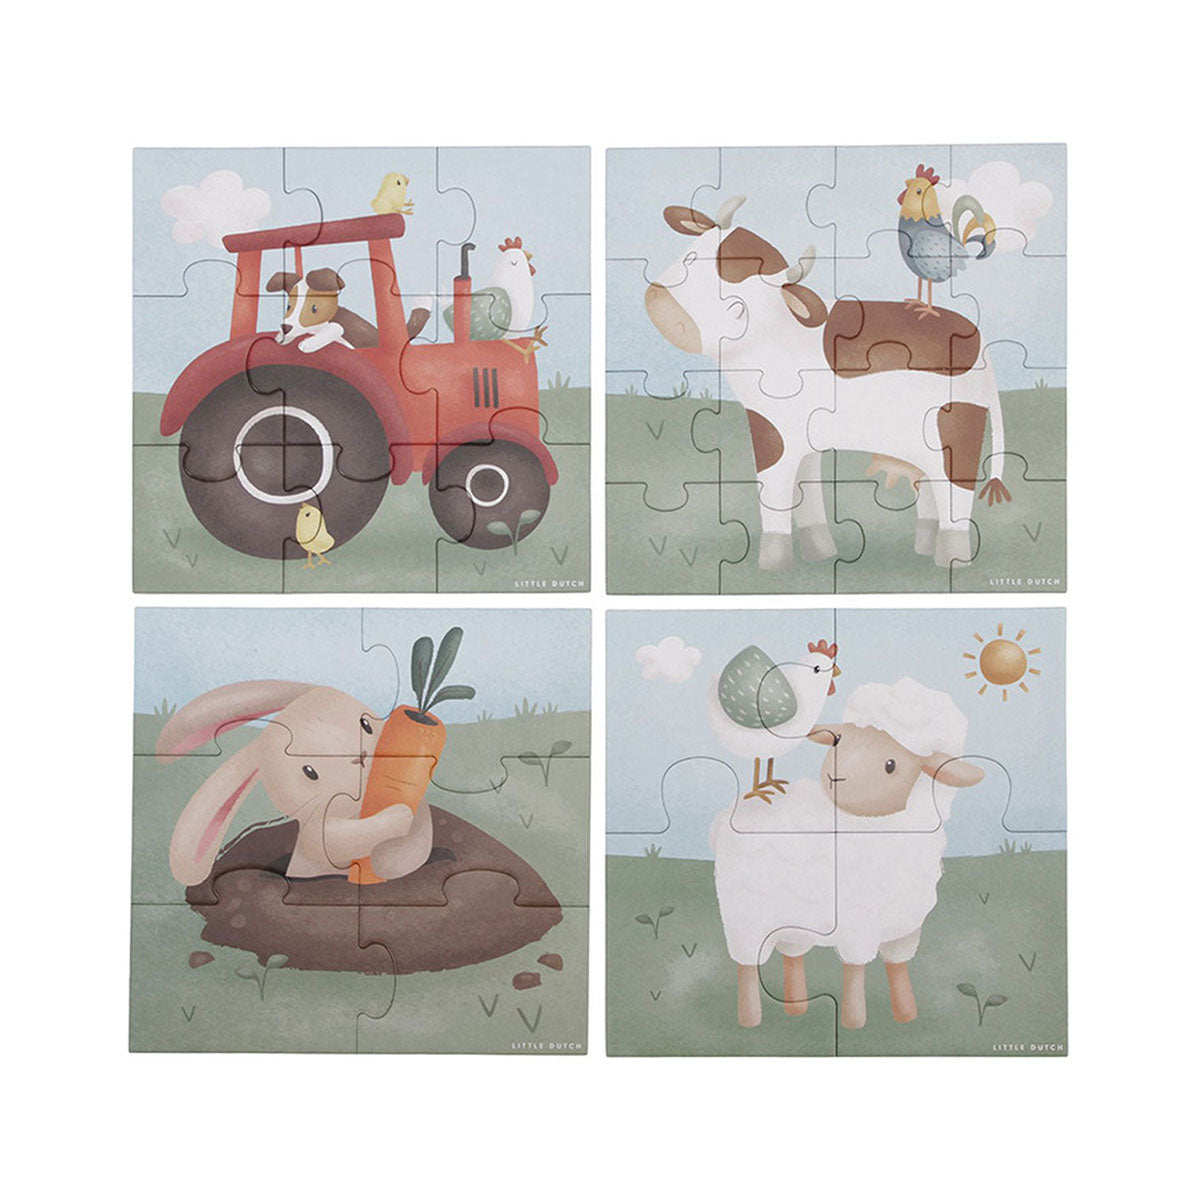 Laat je kindje op een gezellige manier kennis maken met de dieren op de boerderij met deze leuke 4-in-1 puzzel little farm van Little Dutch. Deze leuke puzzels hebben allemaal een boerderijthema met superschattige dieren in de bekende, schattige Little Dutch stijl. VanZus